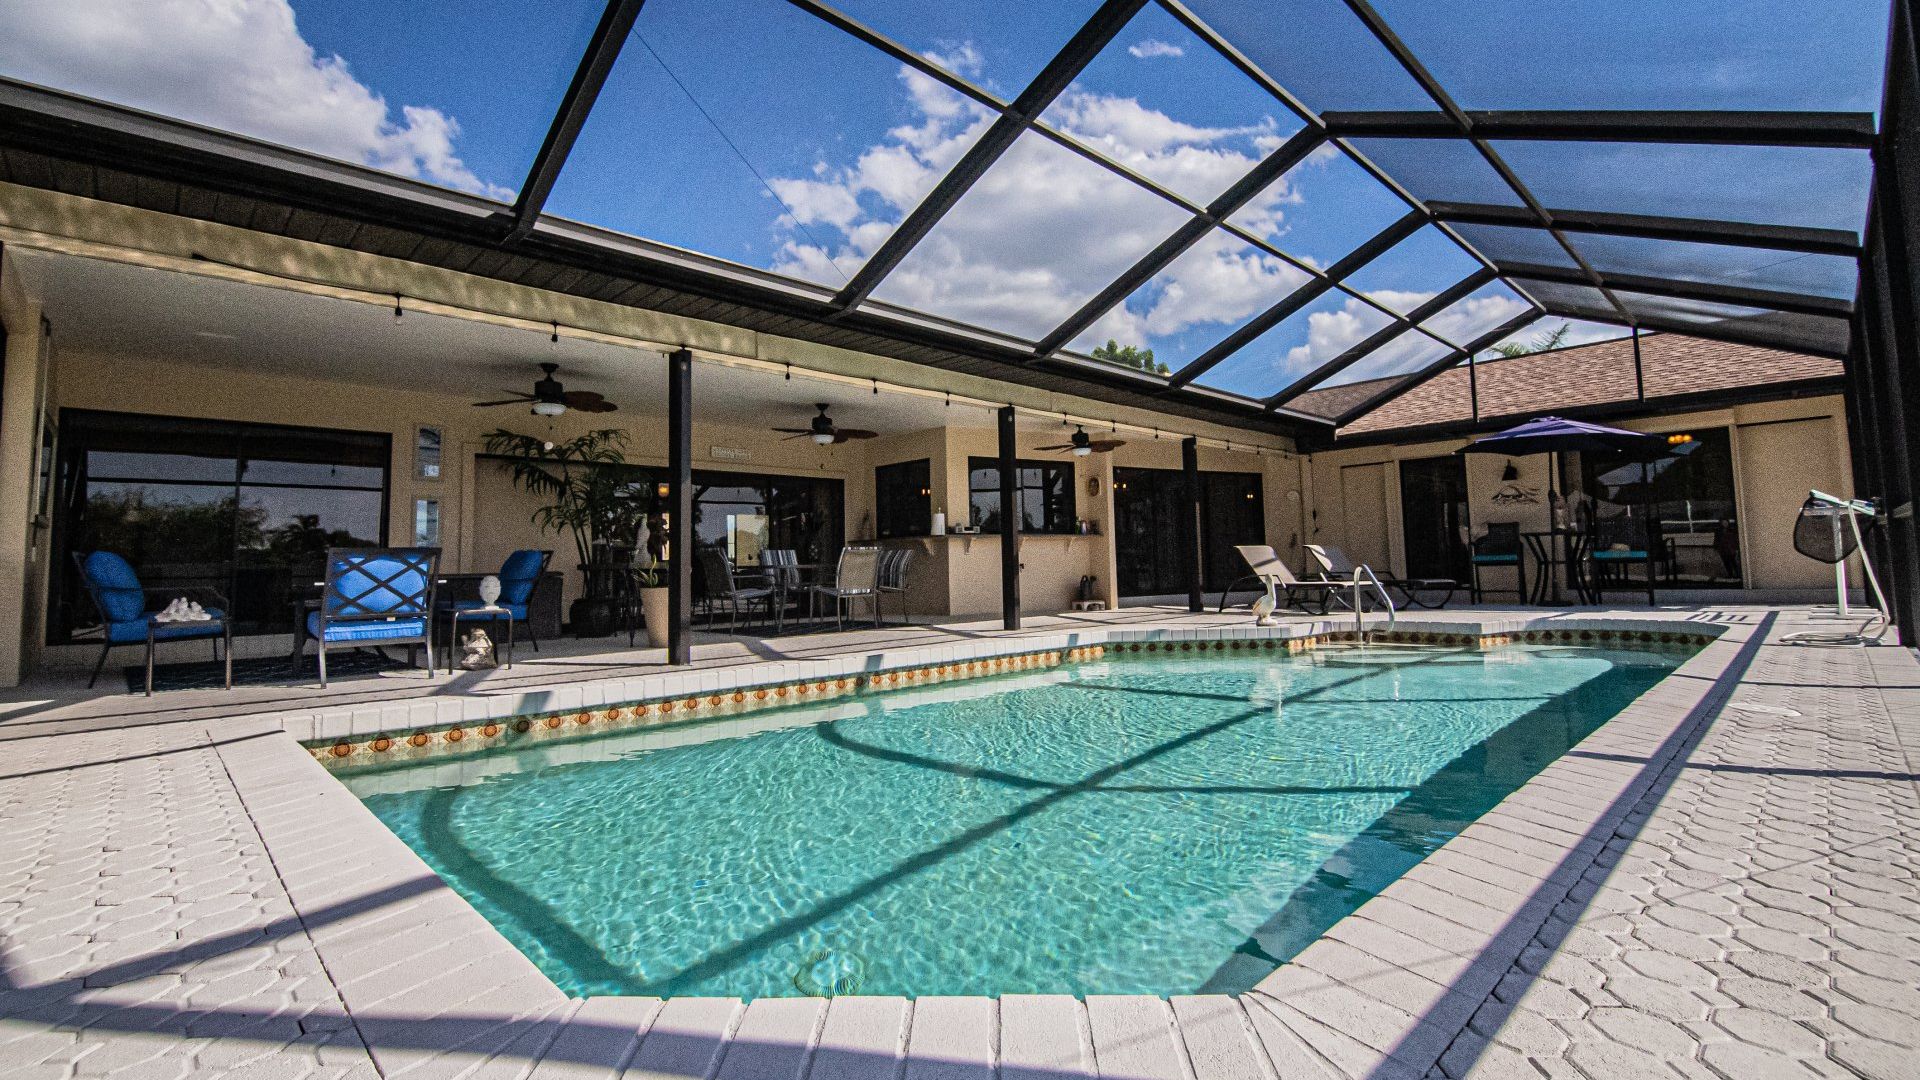 Residence swimming pool